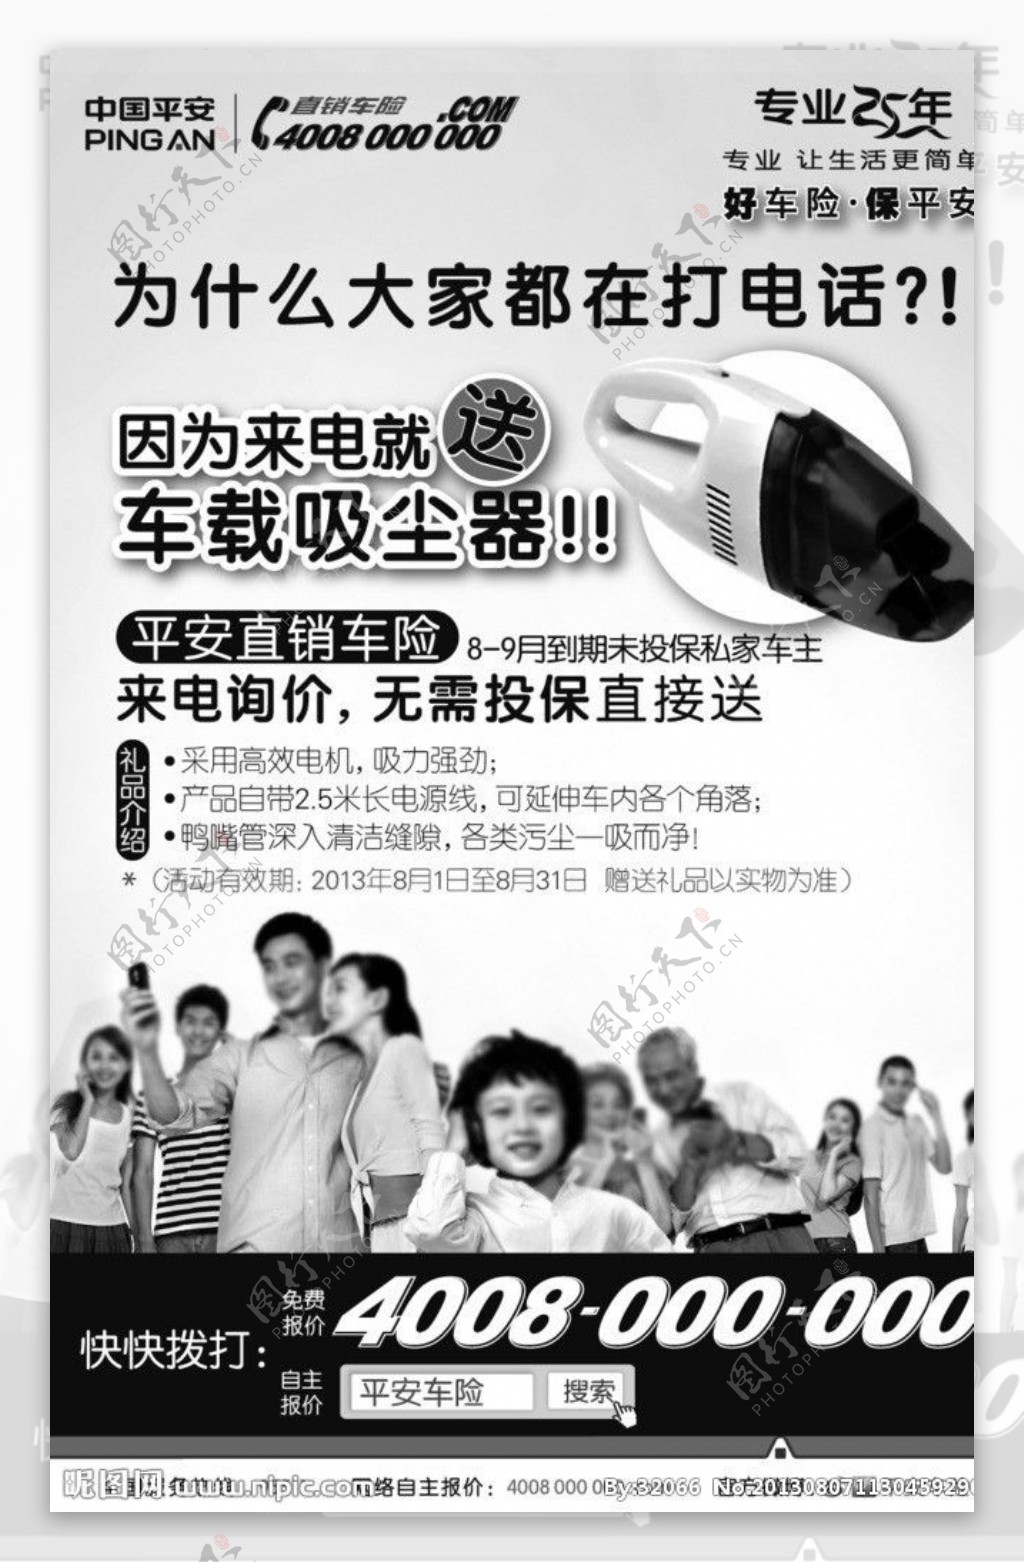 中国平安车险报纸广告图片